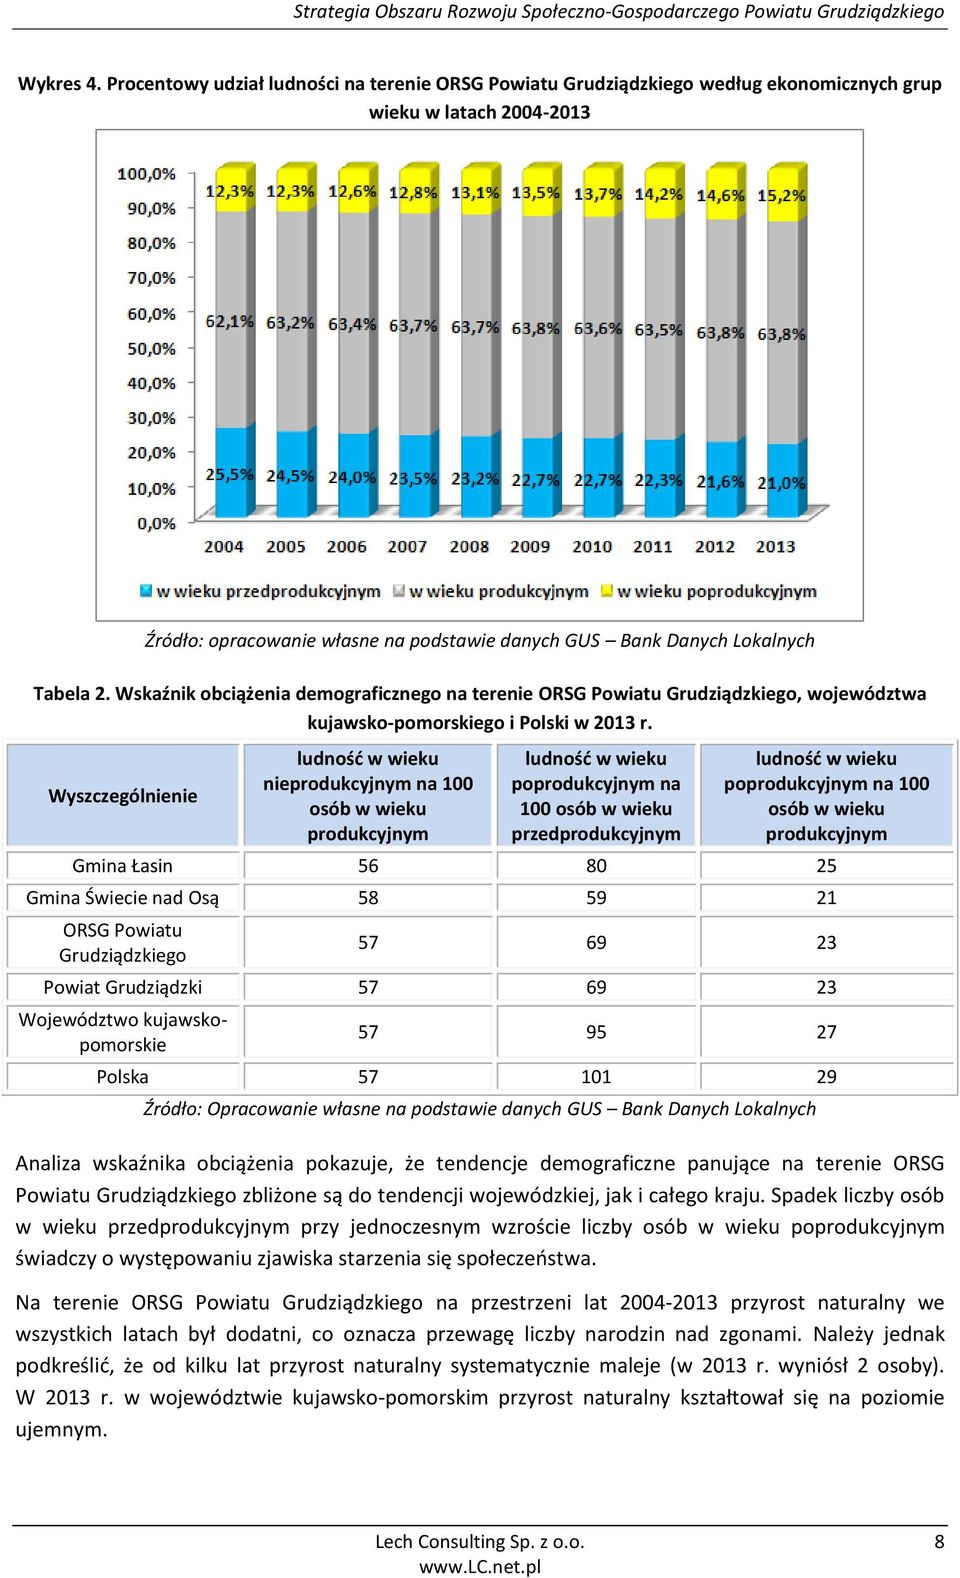 Wskaźnik obciążenia demograficznego na terenie ORSG Powiatu Grudziądzkiego, województwa kujawsko-pomorskiego i Polski w 2013 r.